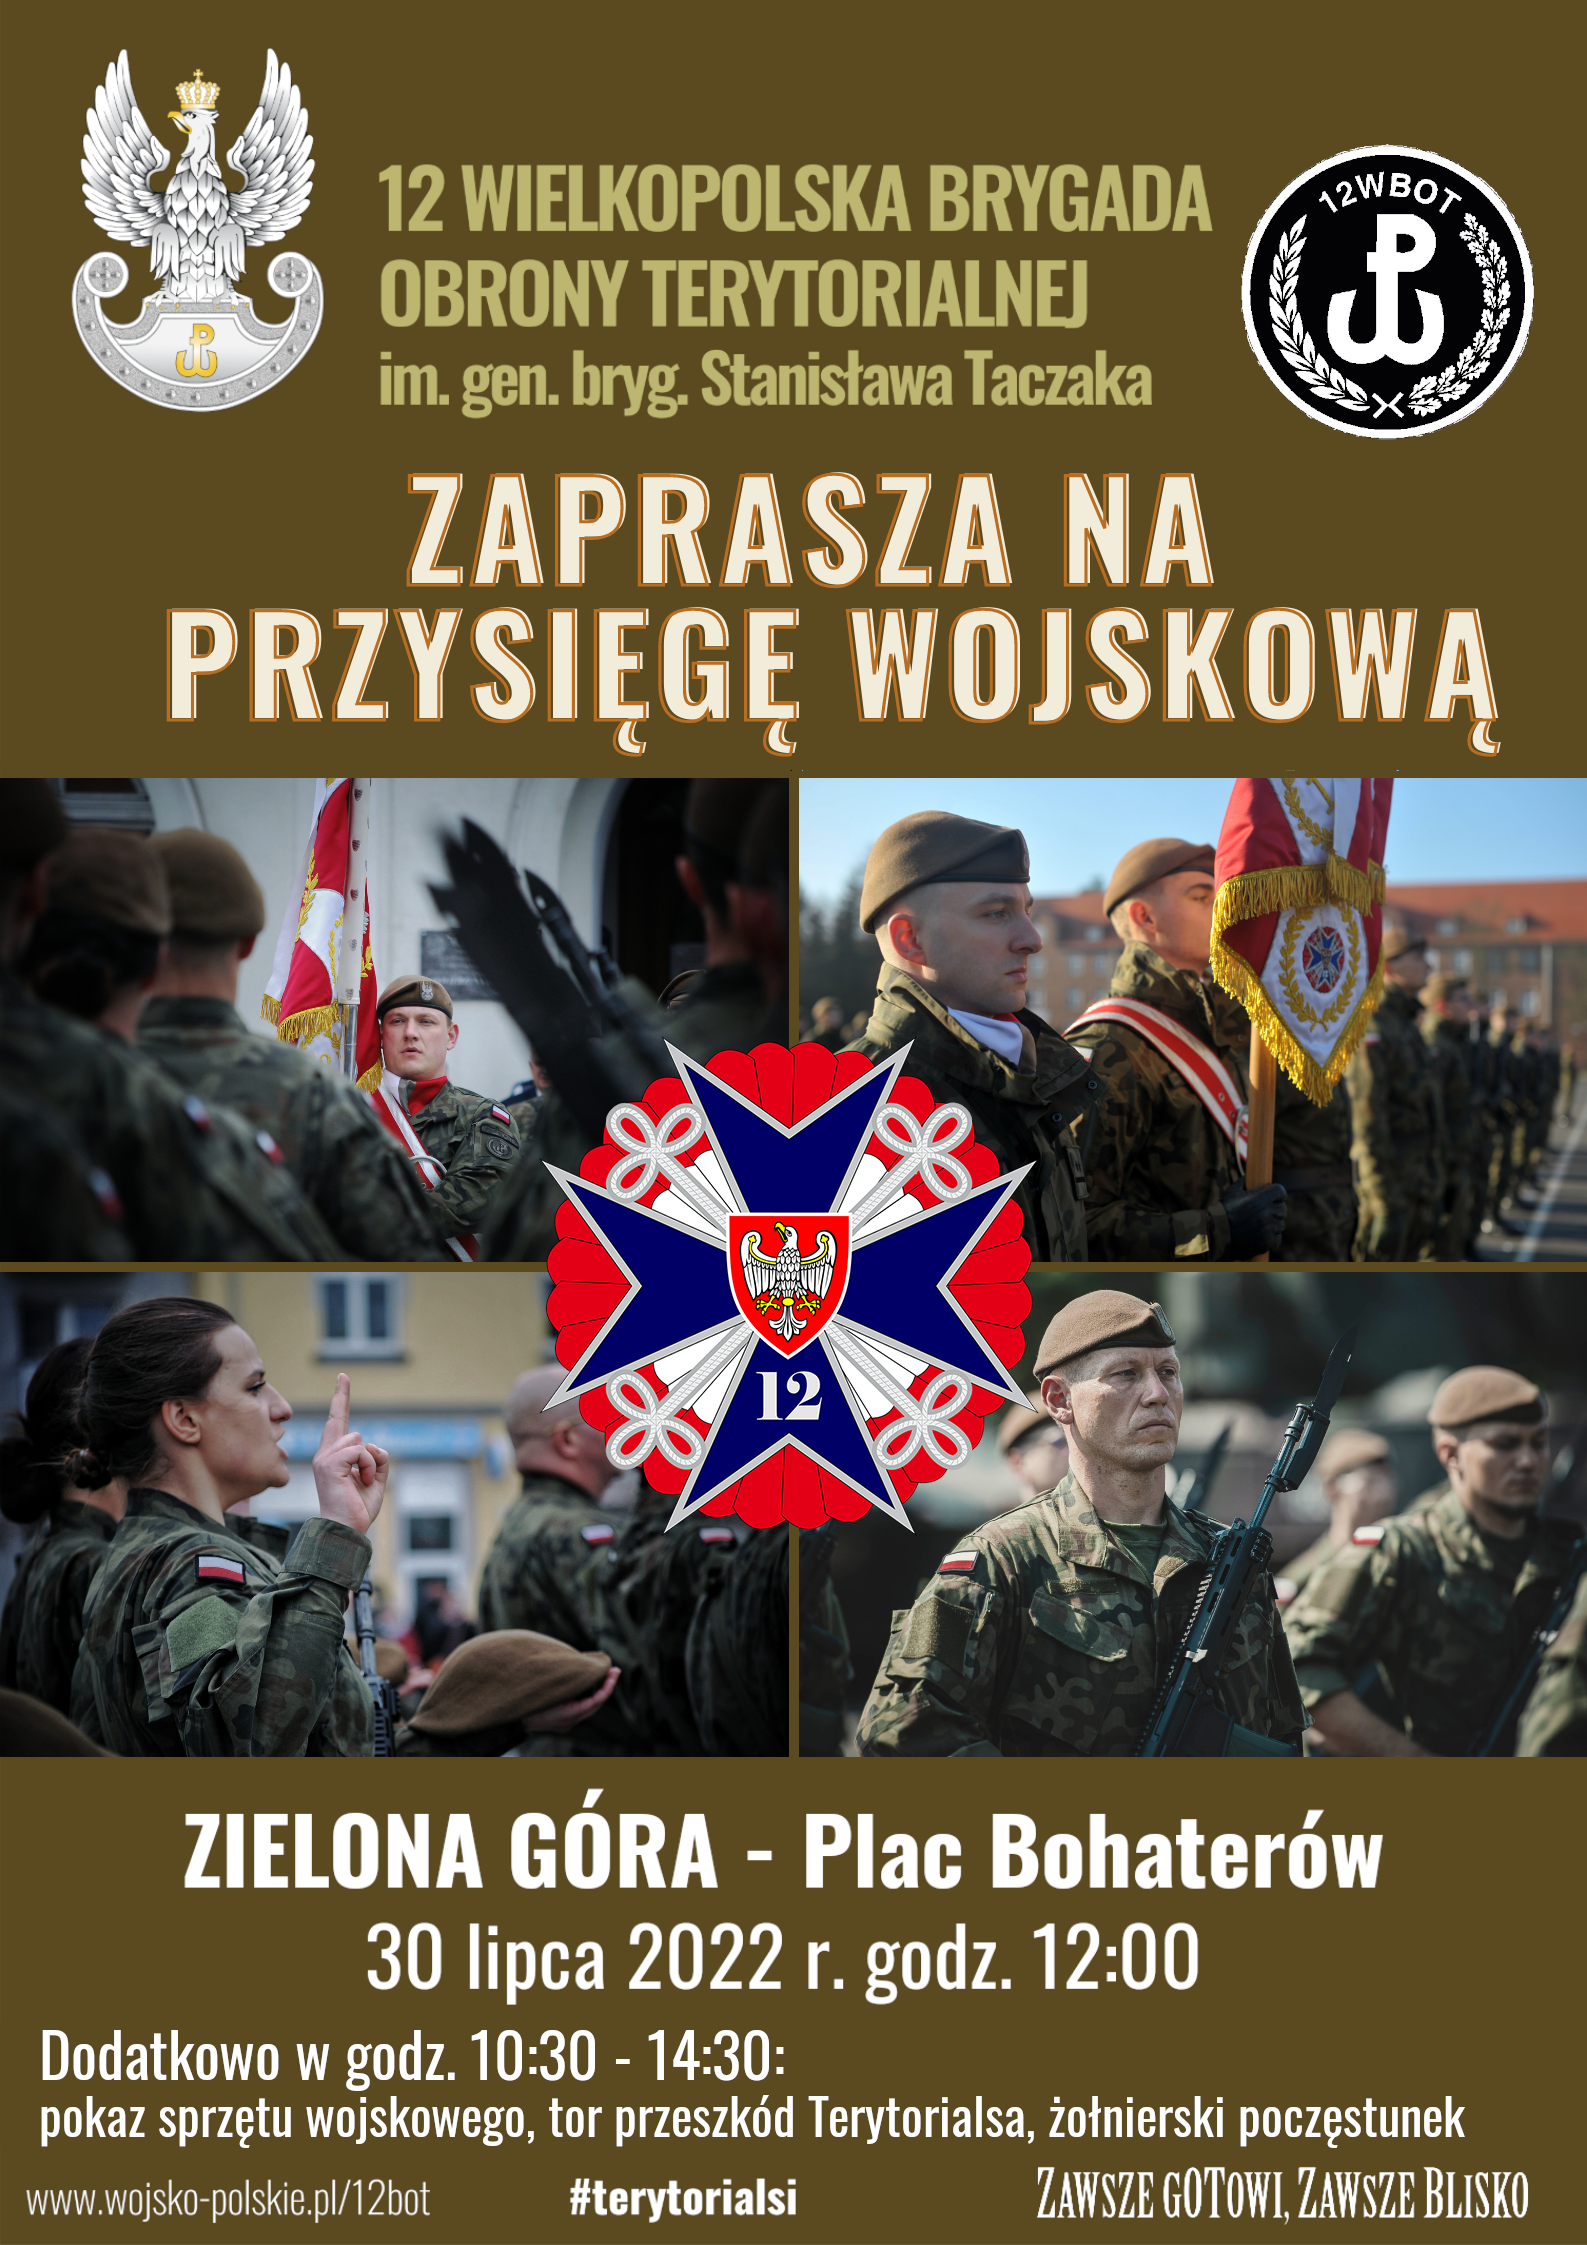 Przysięga wojskowa żołnierzy terytorialnej służby wojskowej odbędzie się 30 lipca na Placu Bohaterów